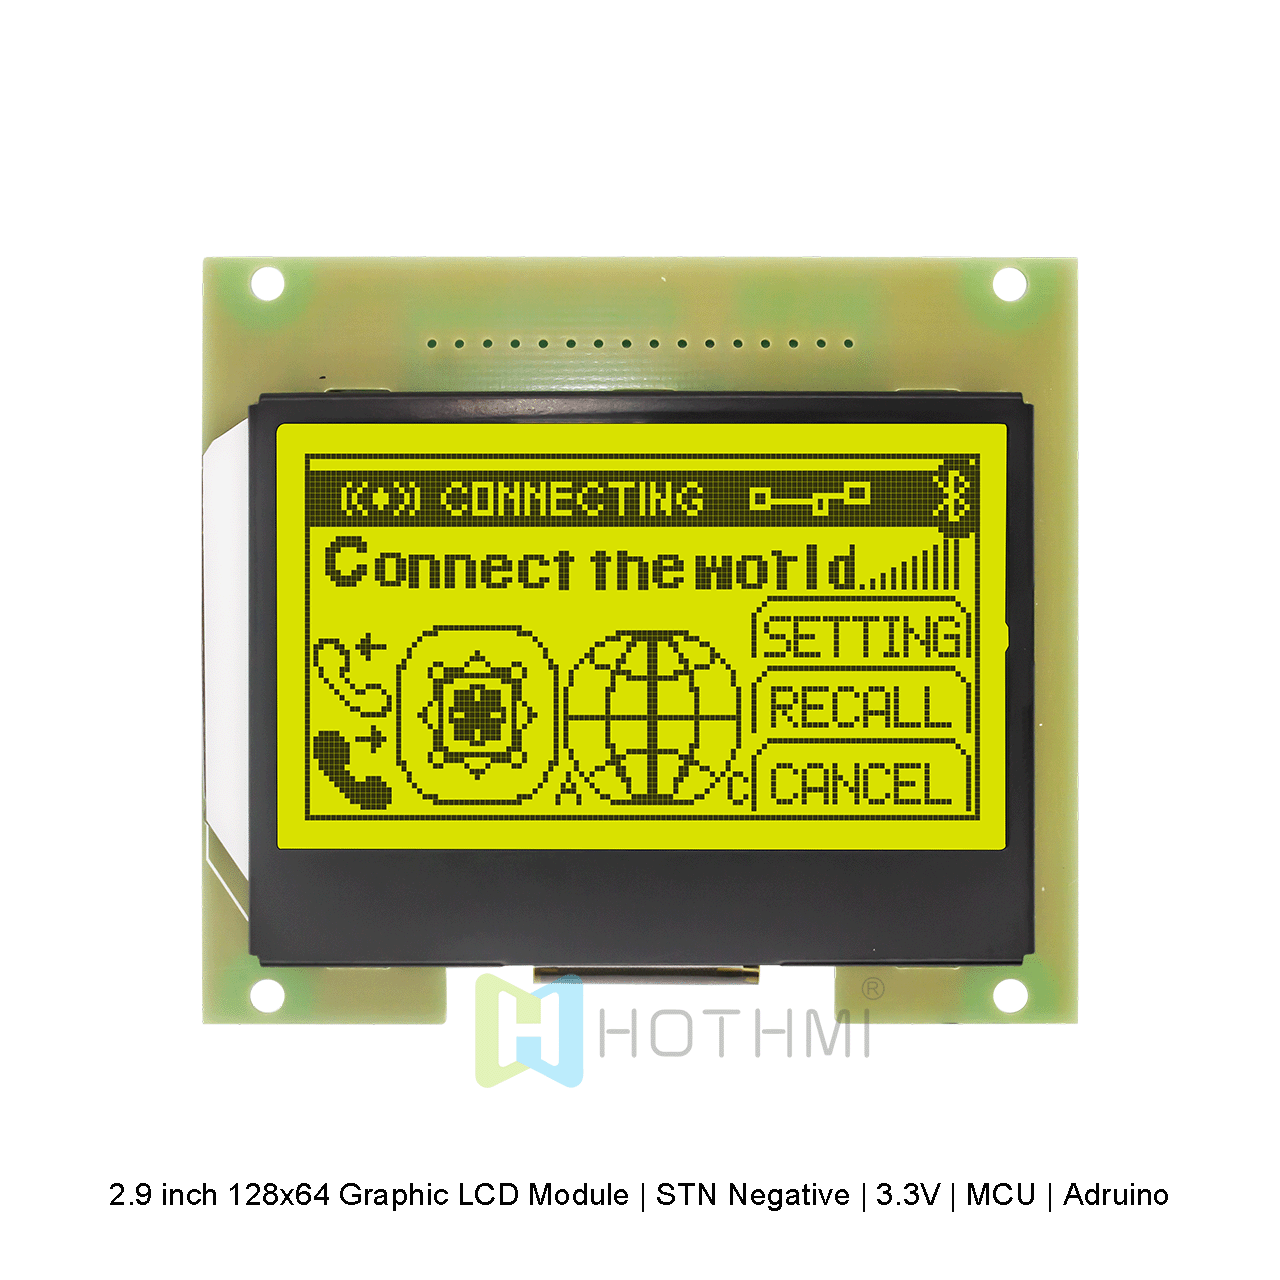 2.9 inch 128x64 Graphic LCD Module | STN Negative | 3.3V | MCU | Adruino